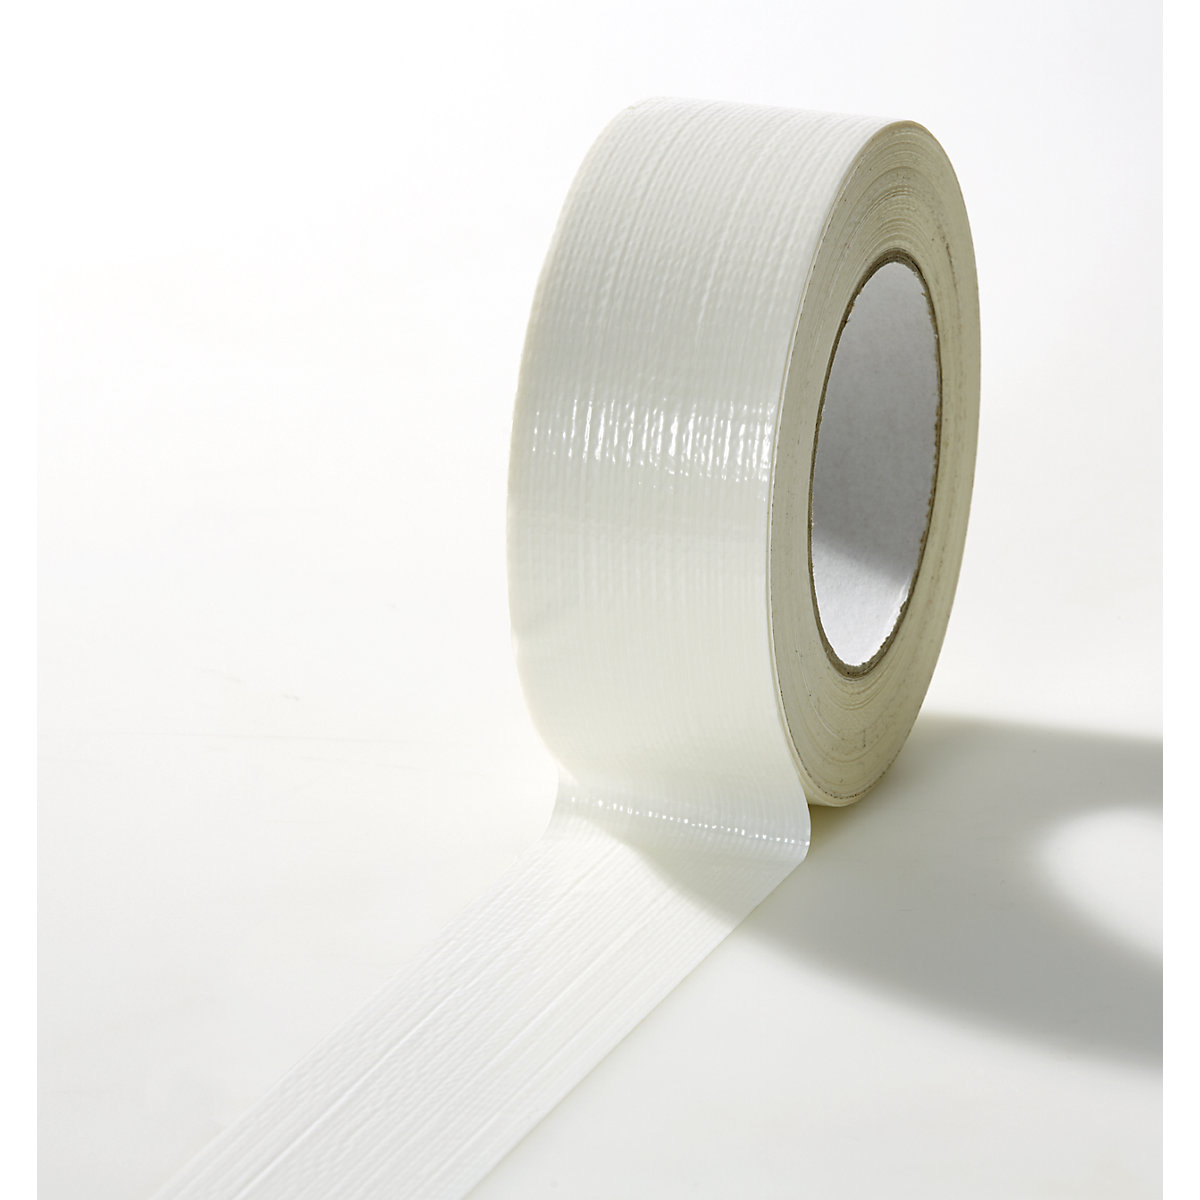 Tkaninová páska, v různých barvách, bal.j. 24 rolí, bílá, šířka pásky 38 mm-19